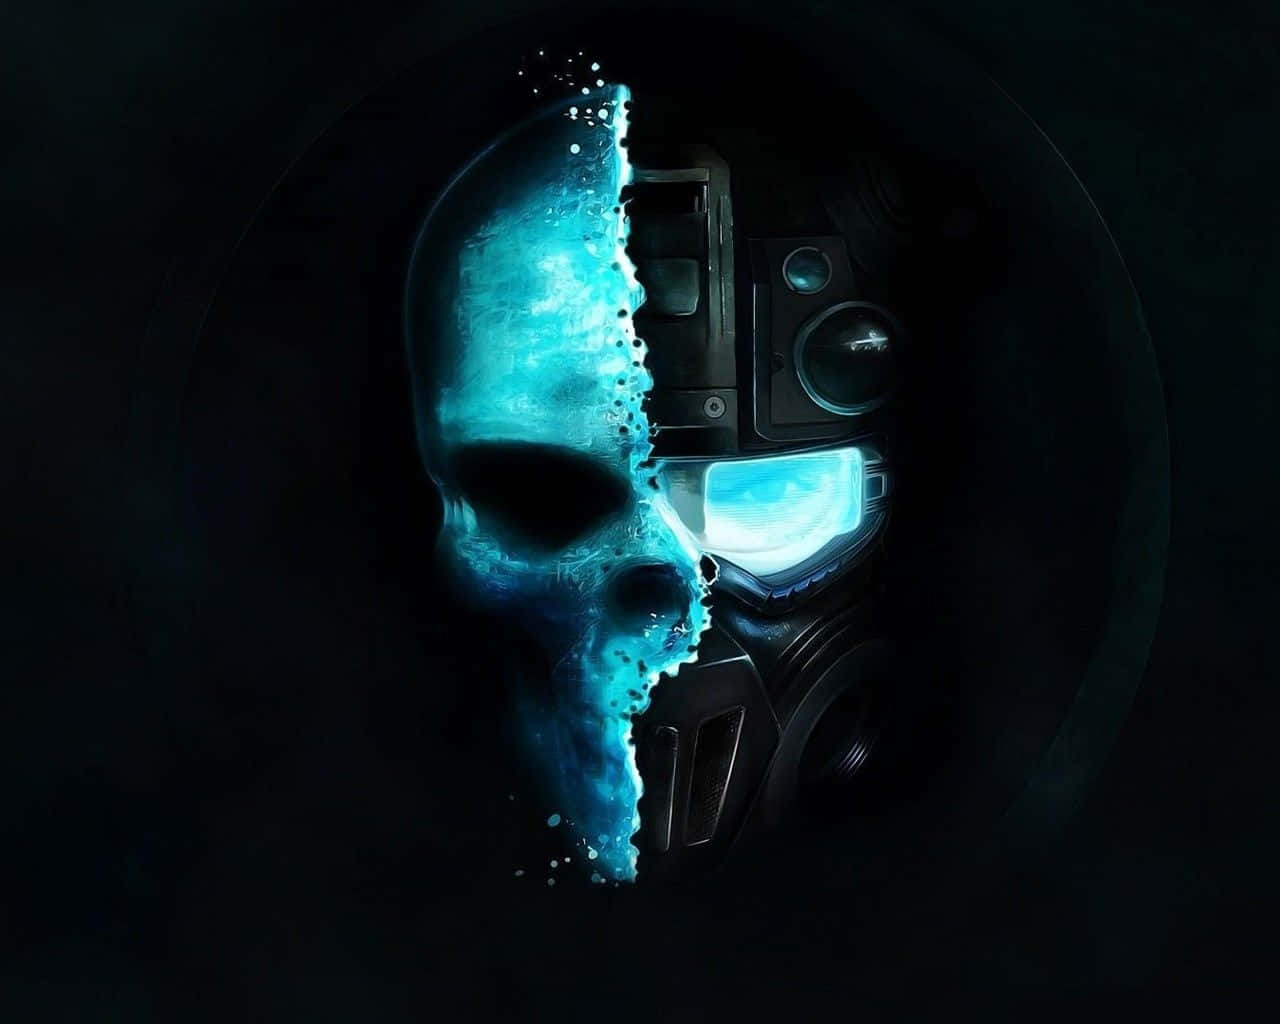 Mester ikoniske figurer, kæmp mod forskellige fjender og opdag nye mysterier i Gears of War 5. Wallpaper